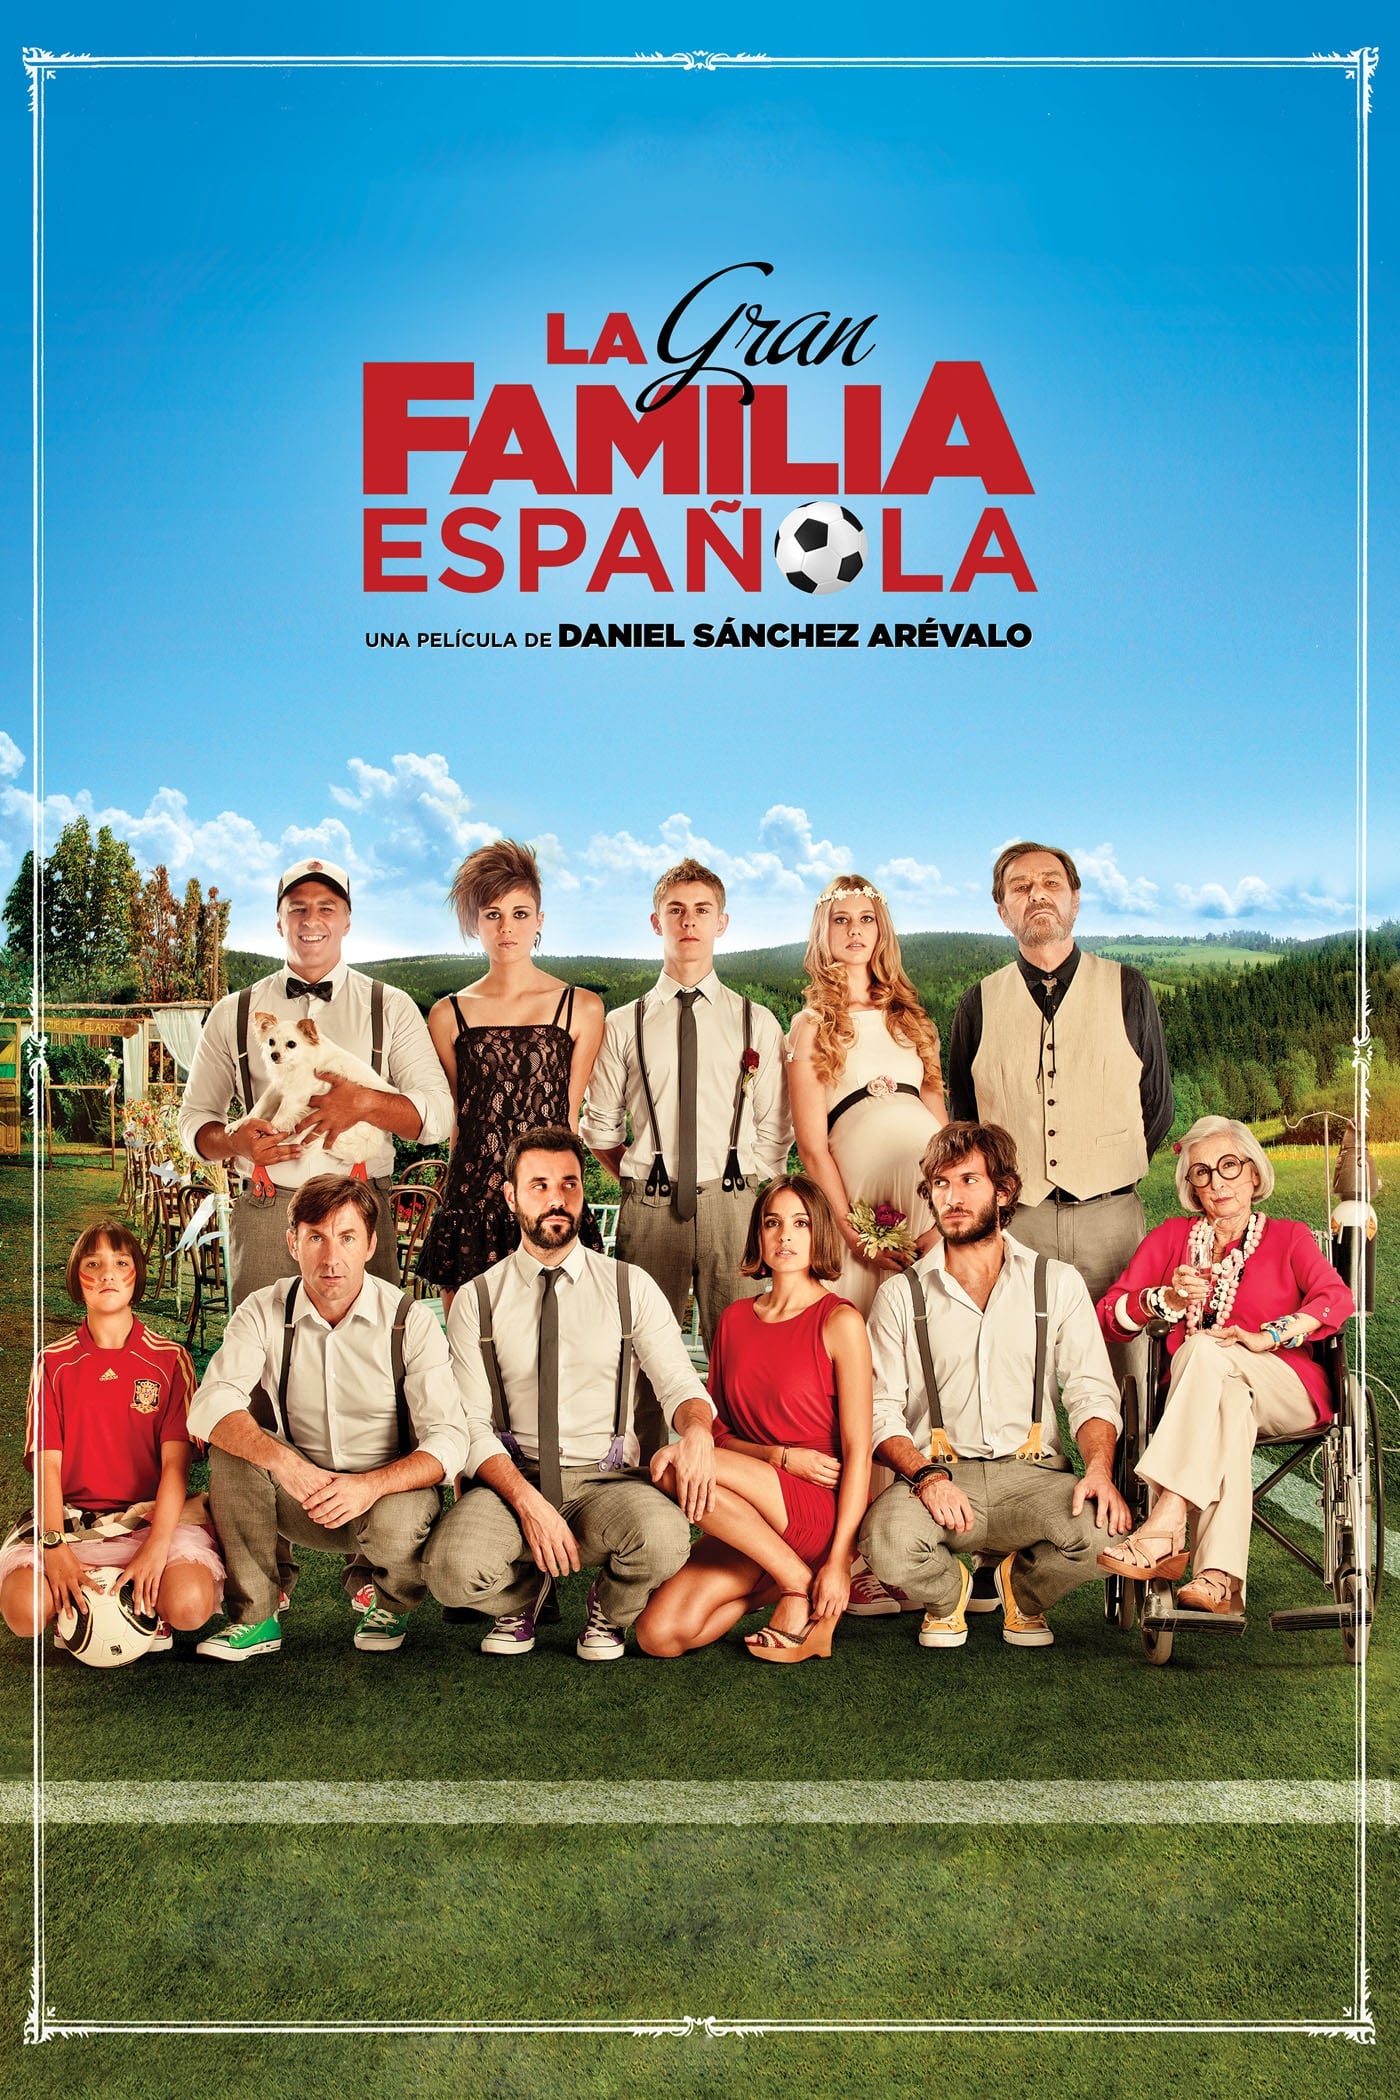 La gran familia española film